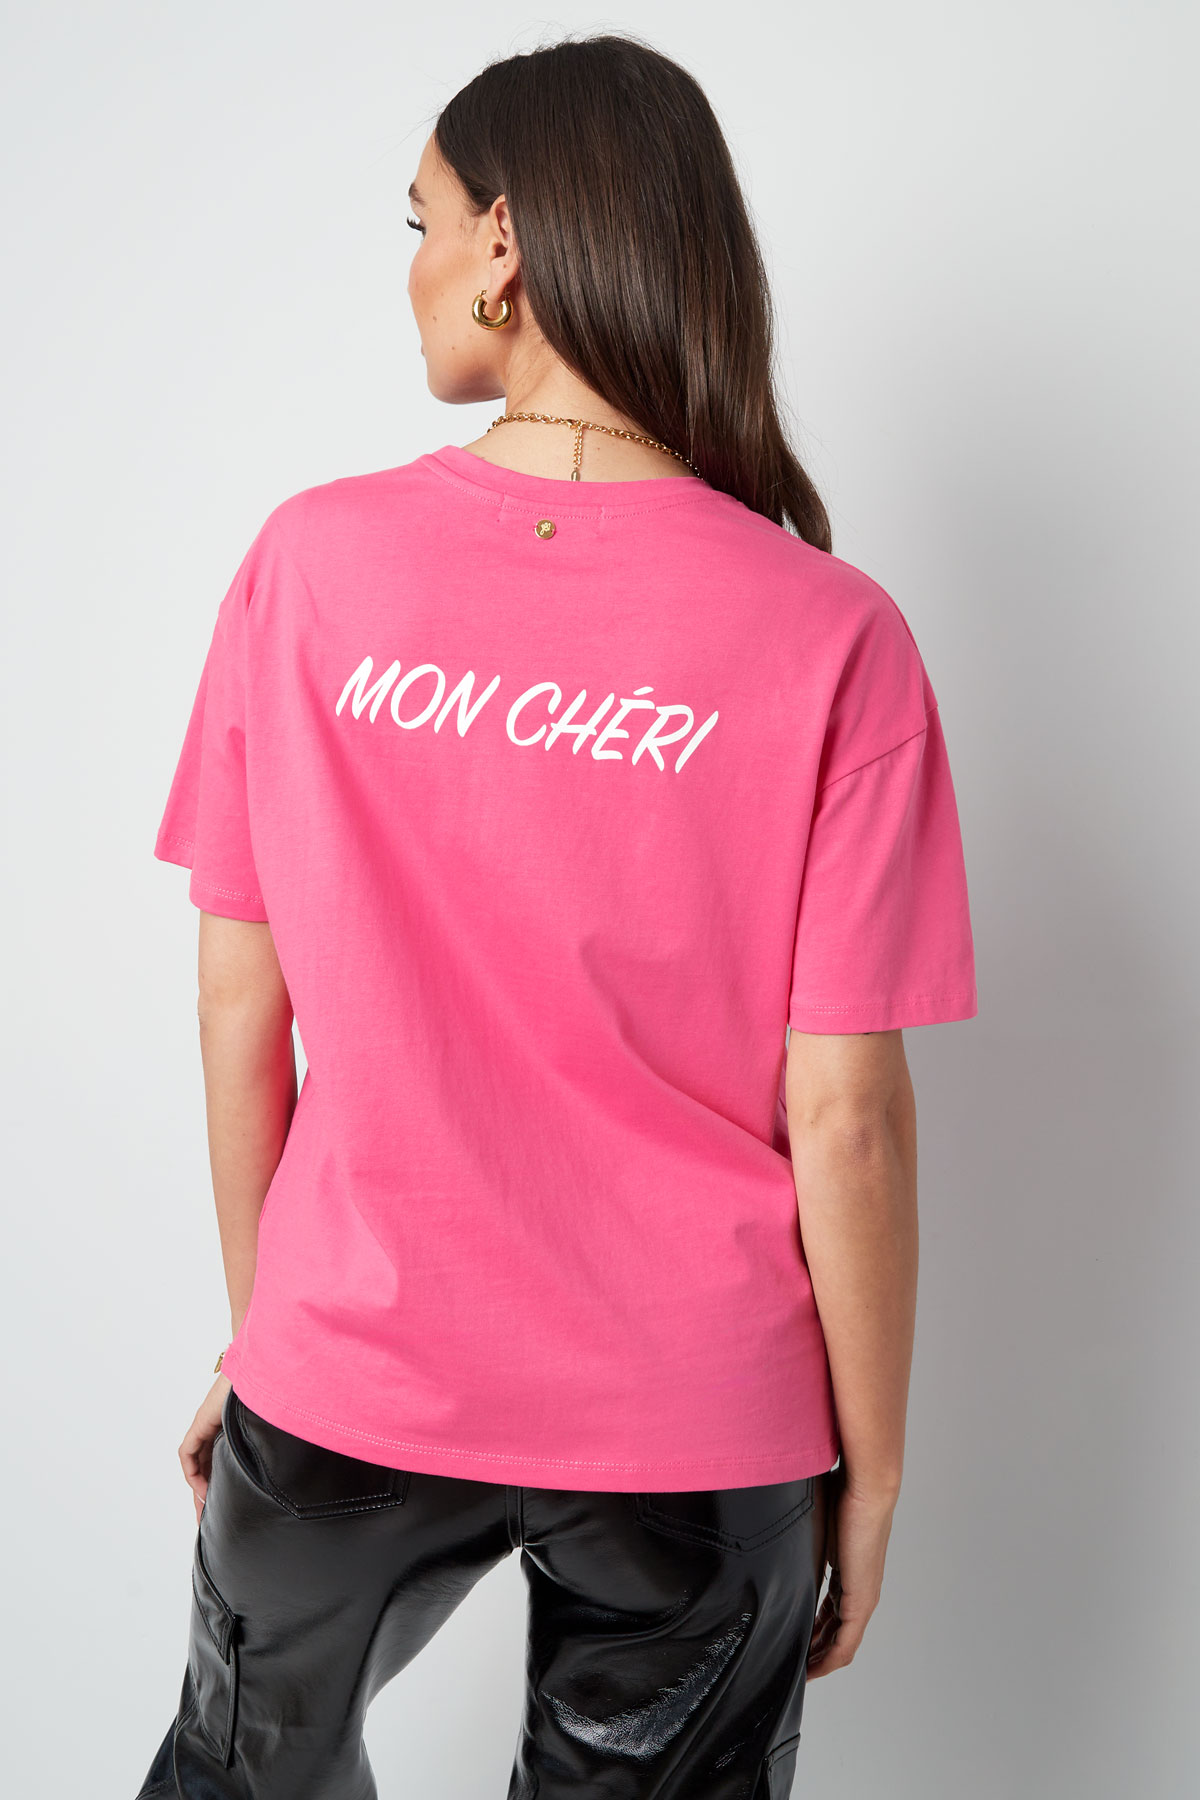 T-shirt mon cheri - fuchsia Picture9